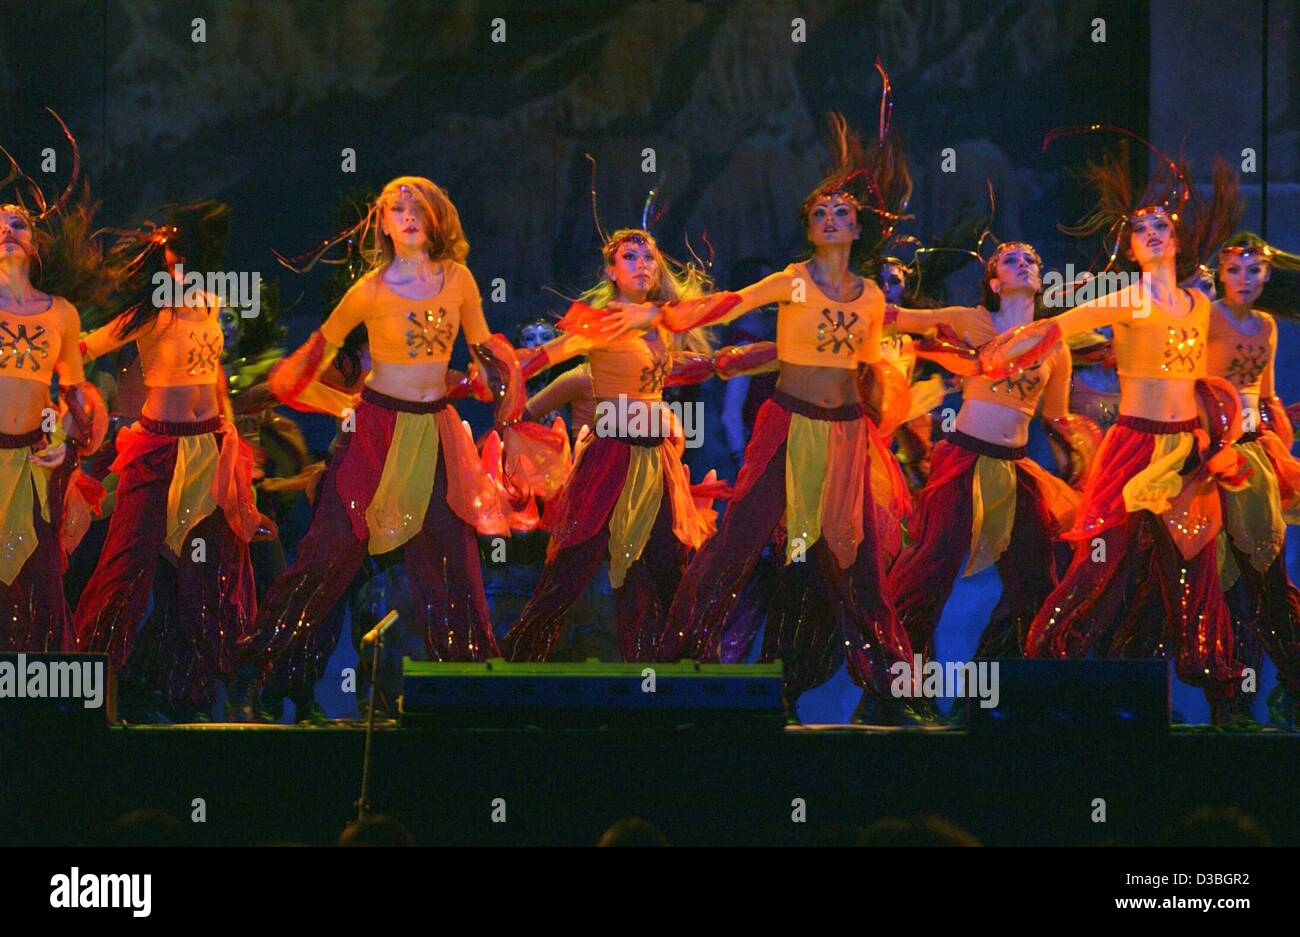 (Dpa) - Tänzer die türkischen Tanz-Show "Fire of Anatolia" in der Köln-Arena in Köln, Deutschland, 7. Mai 2003. Mehr als 70 Tänzer inszenieren eine atemberaubende Show mit monumentalen Bulk Szenen und spektakuläre Beleuchtung Variationen. Stockfoto